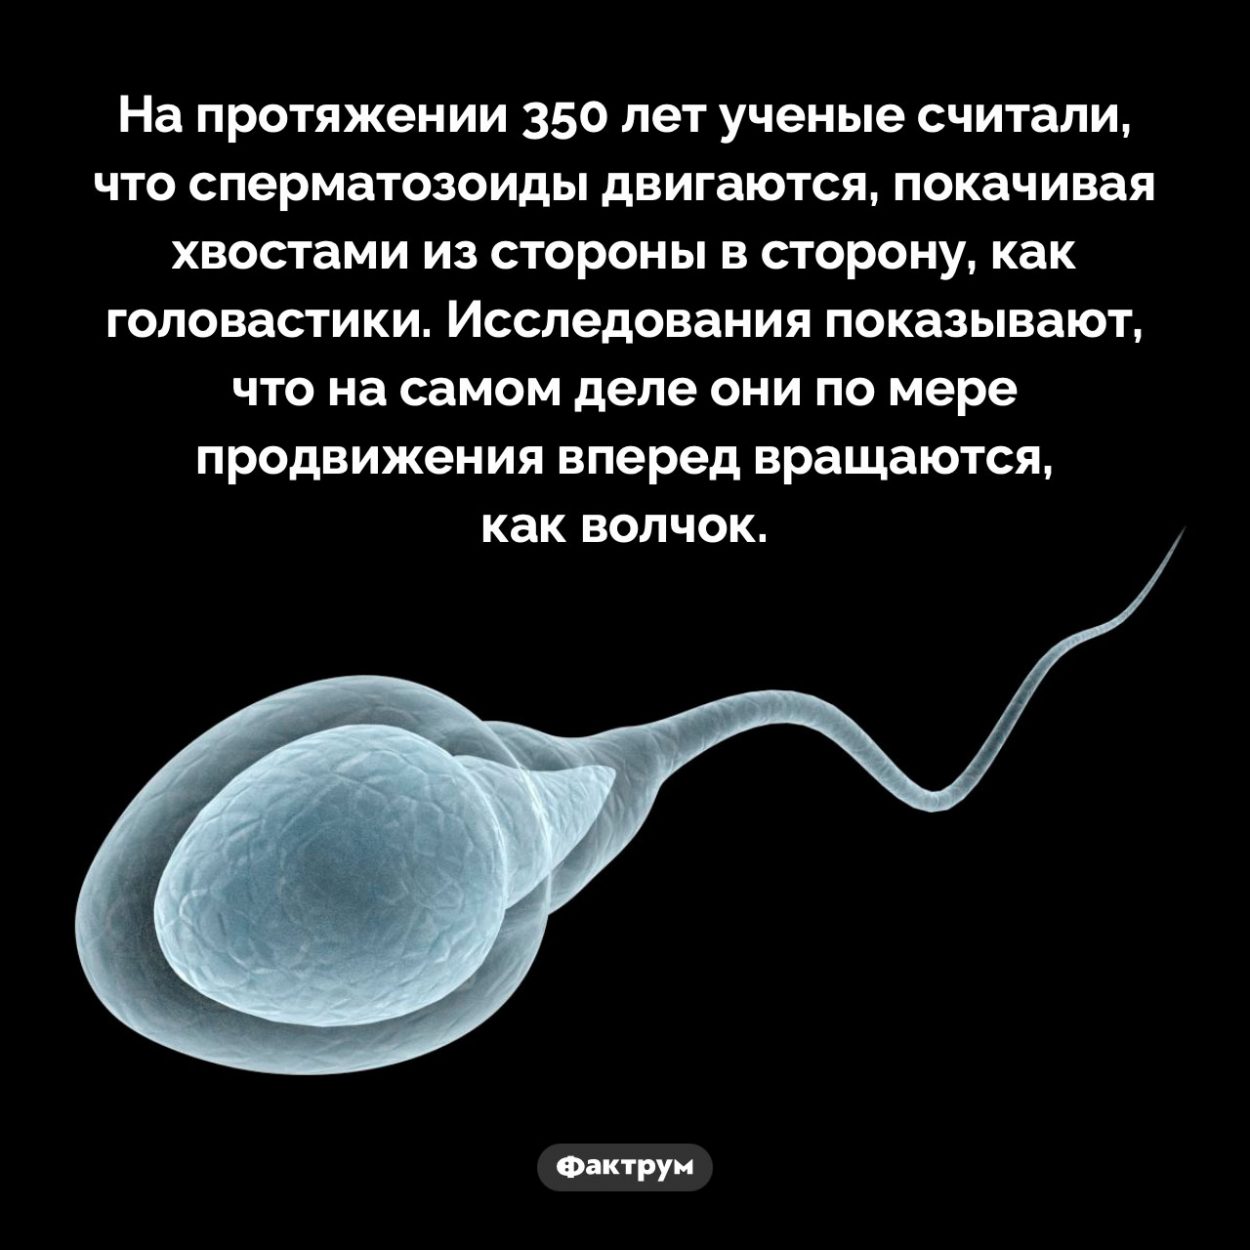 усваивается ли сперма в организме фото 76